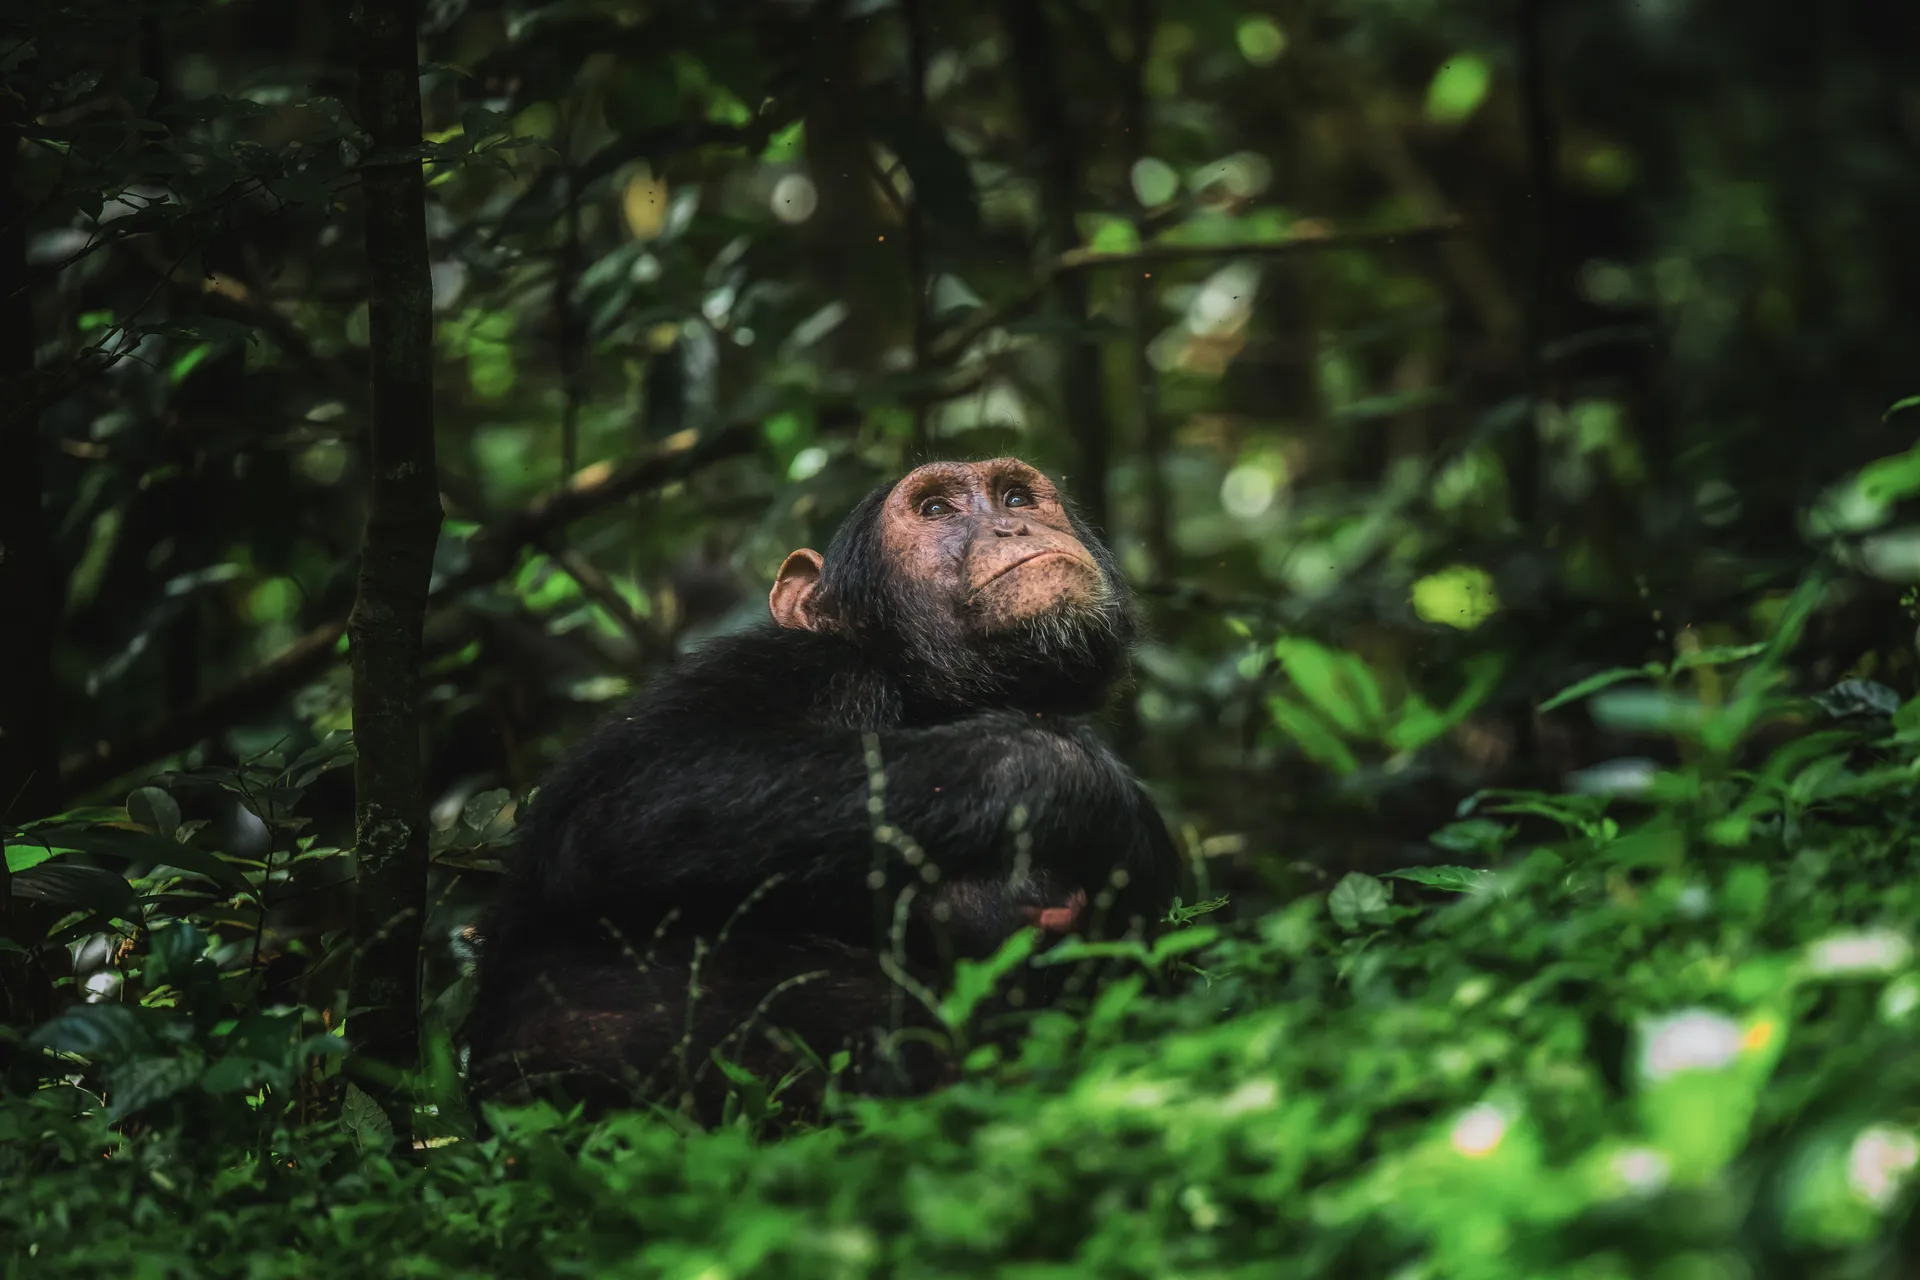 3-Day Kibale Chimp Trekking Tour, Uganda